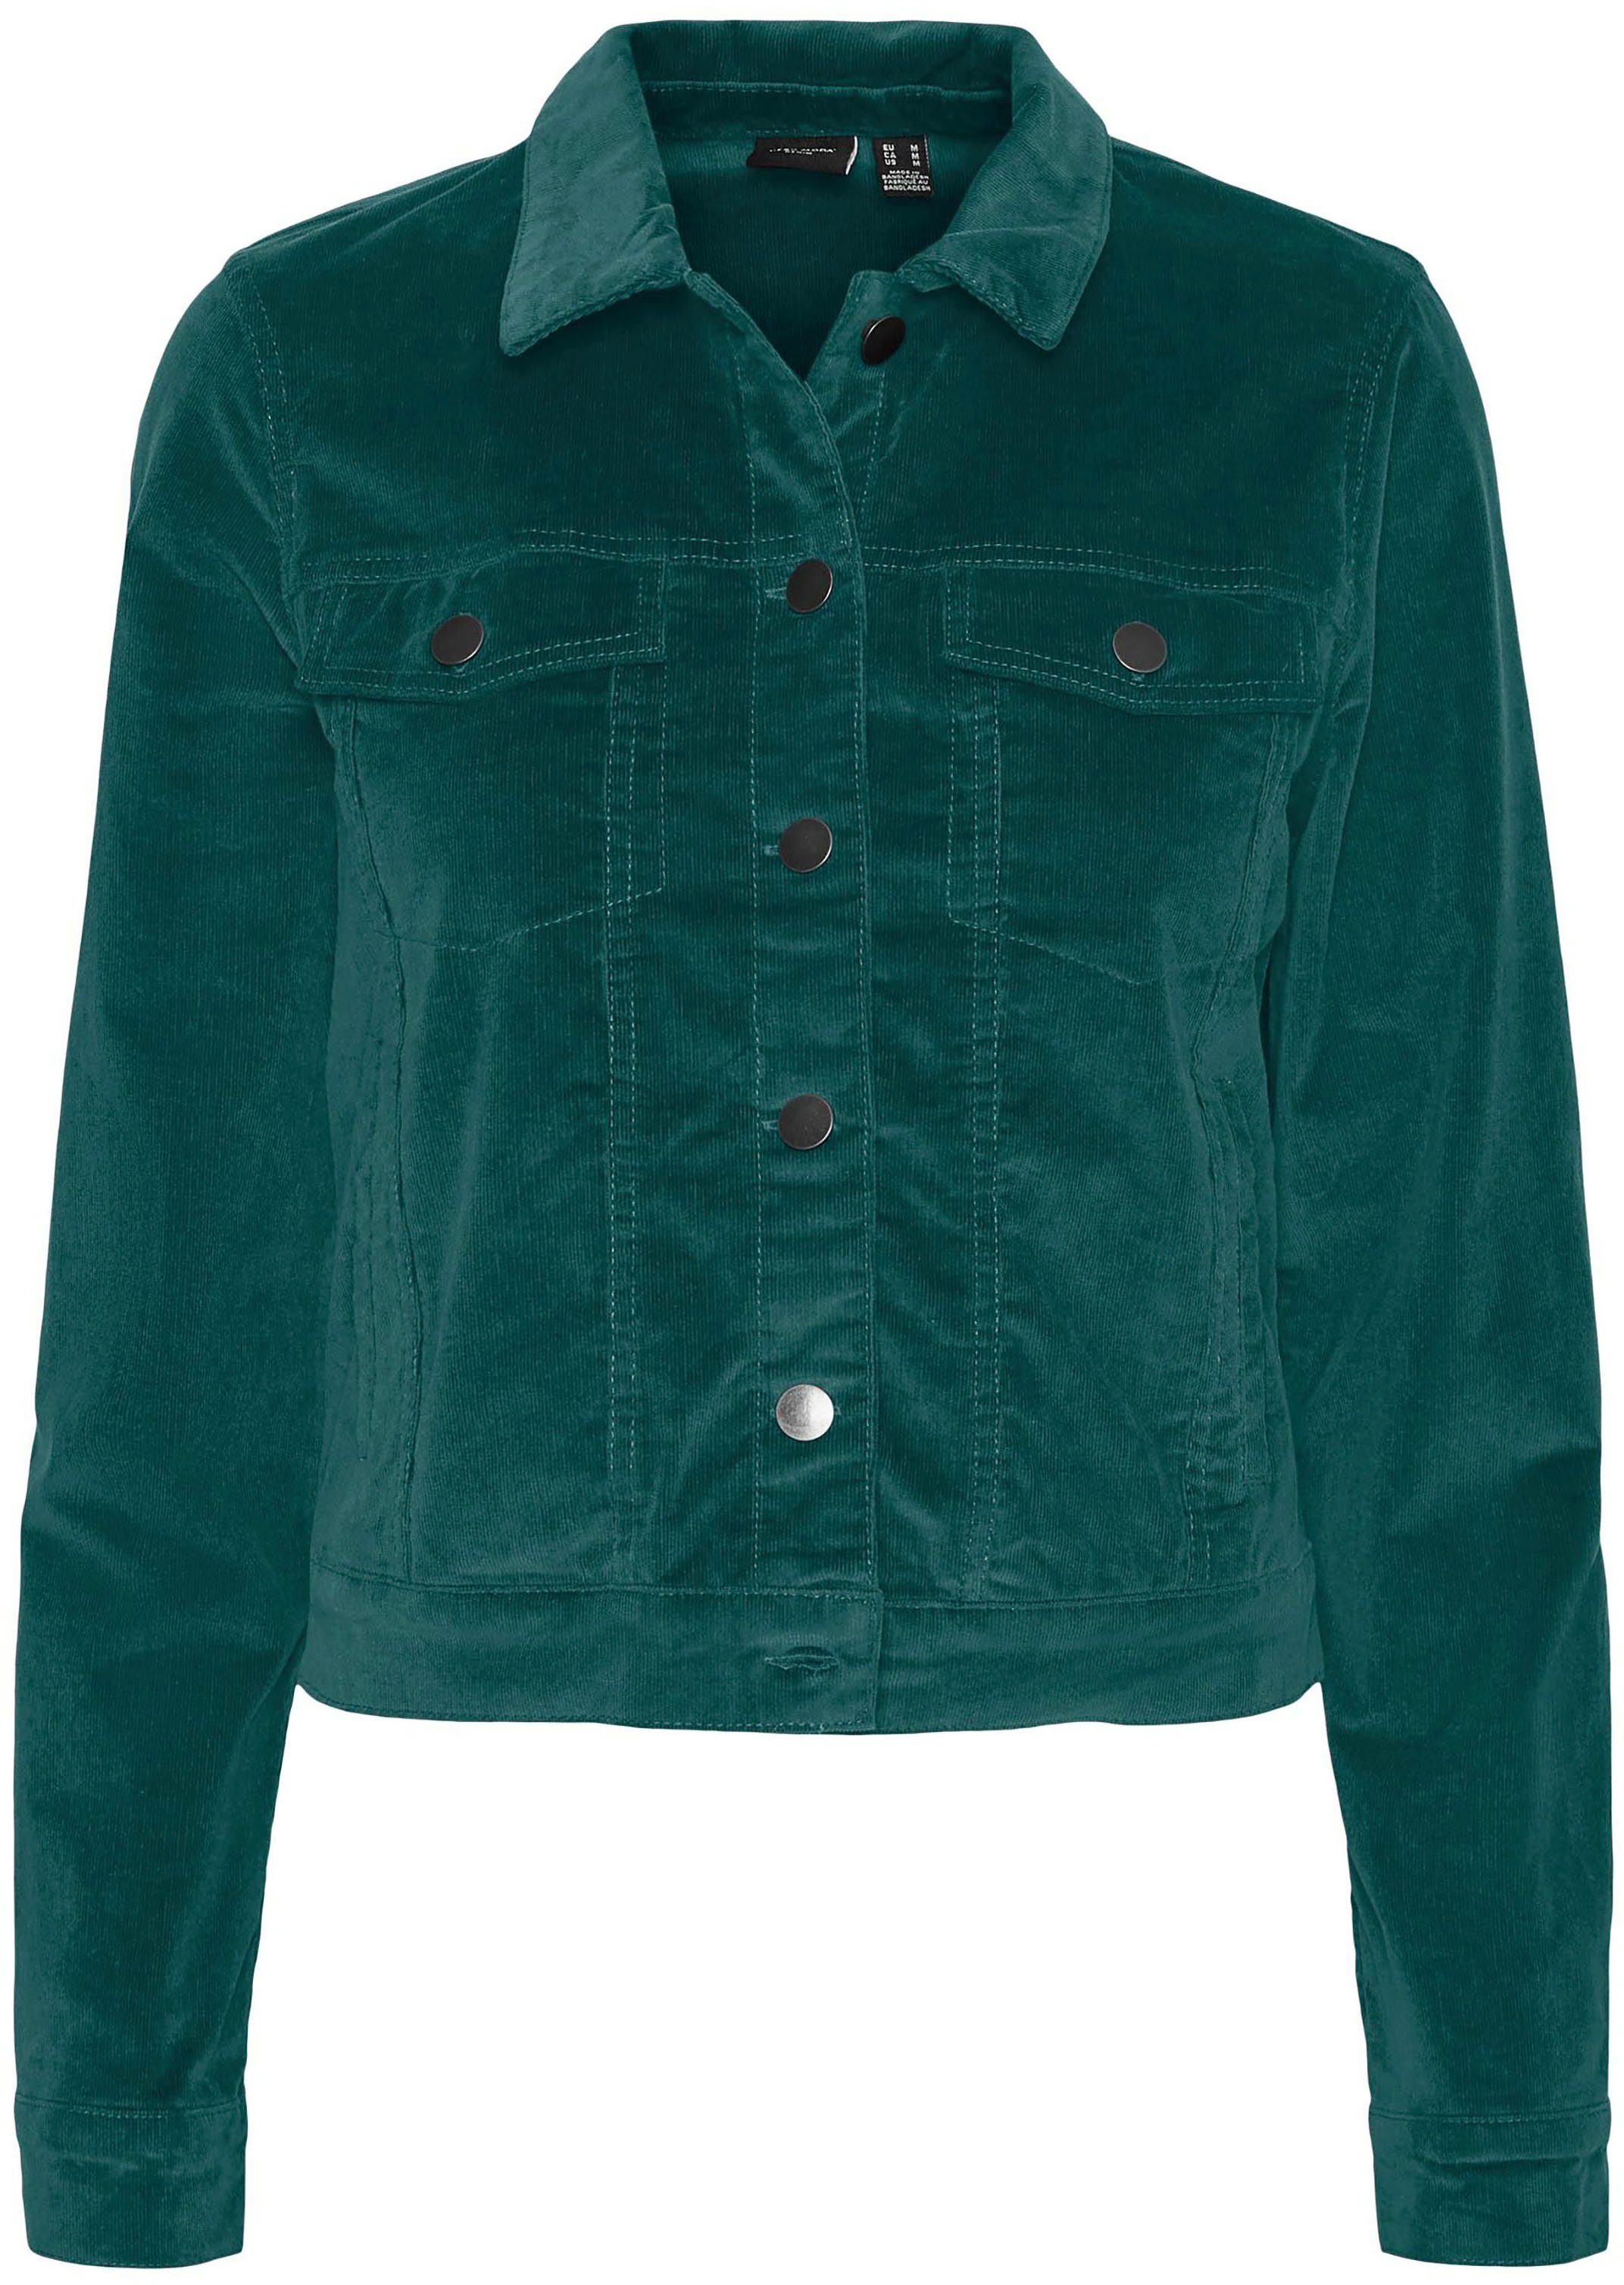 Grüne Cordjacke online kaufen » Jacke aus Cord | OTTO